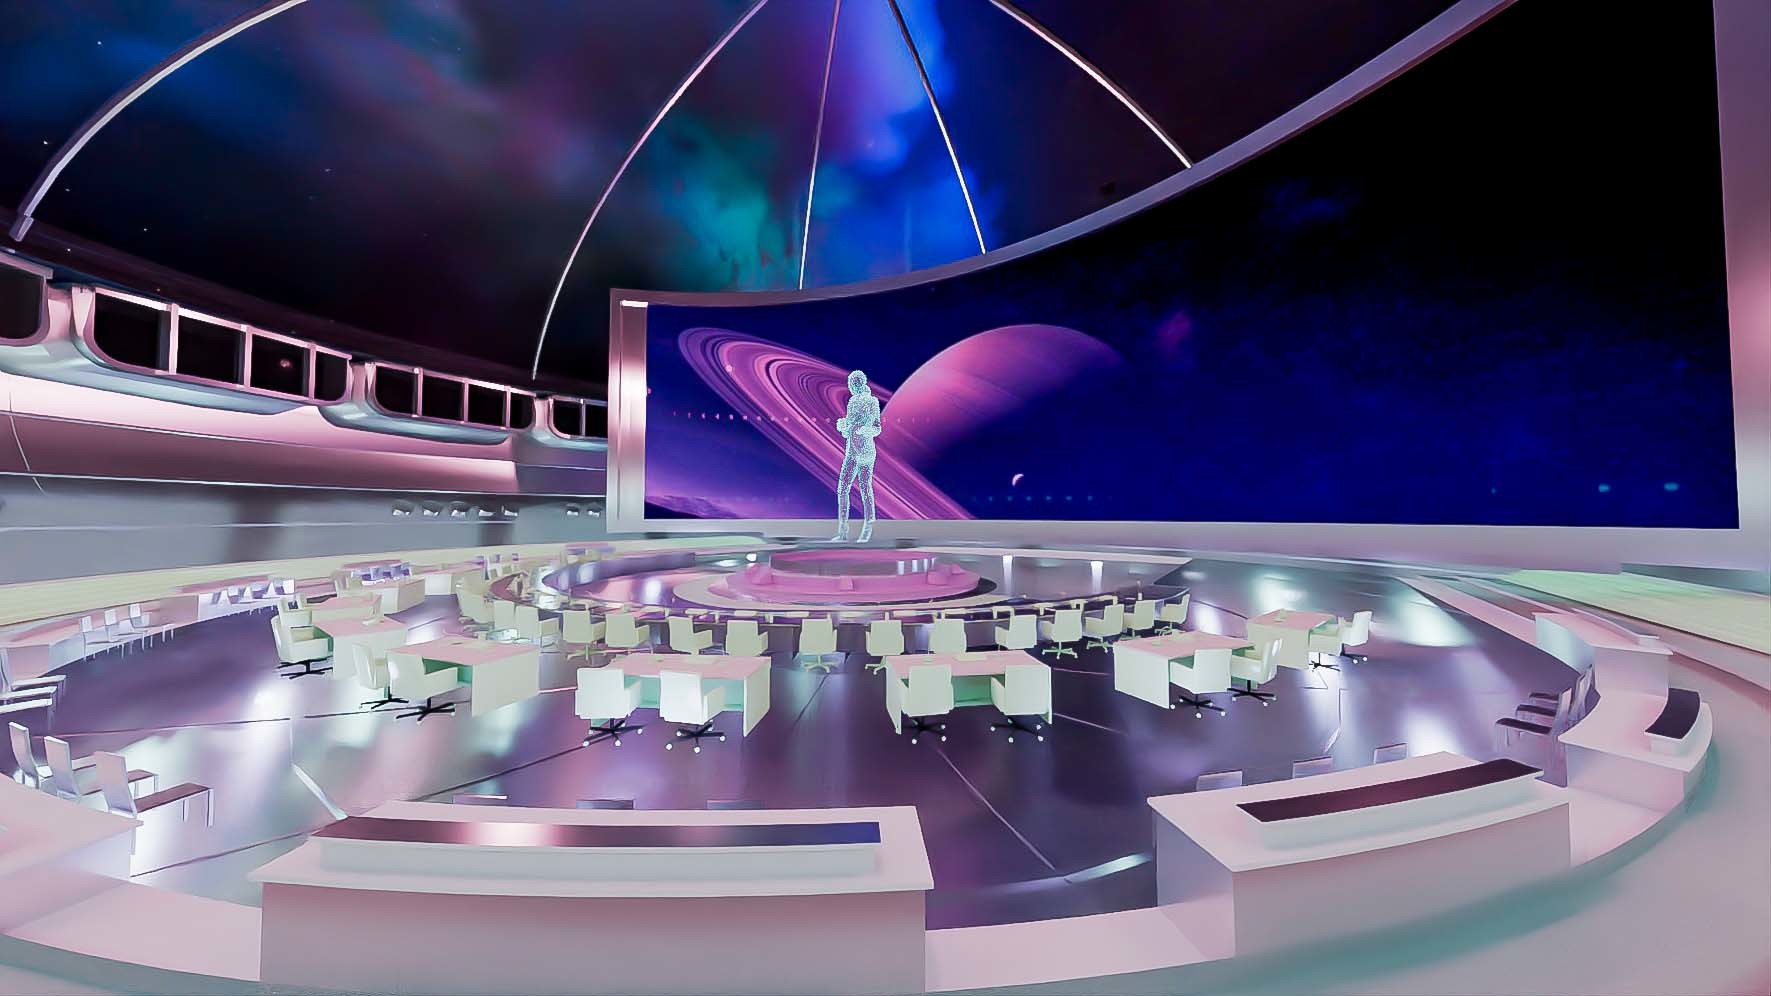 这是一张科幻风格的图片，展示了一个宇宙主题的室内环境，中心有人形轮廓，周围是座椅和窗外的星际景象。